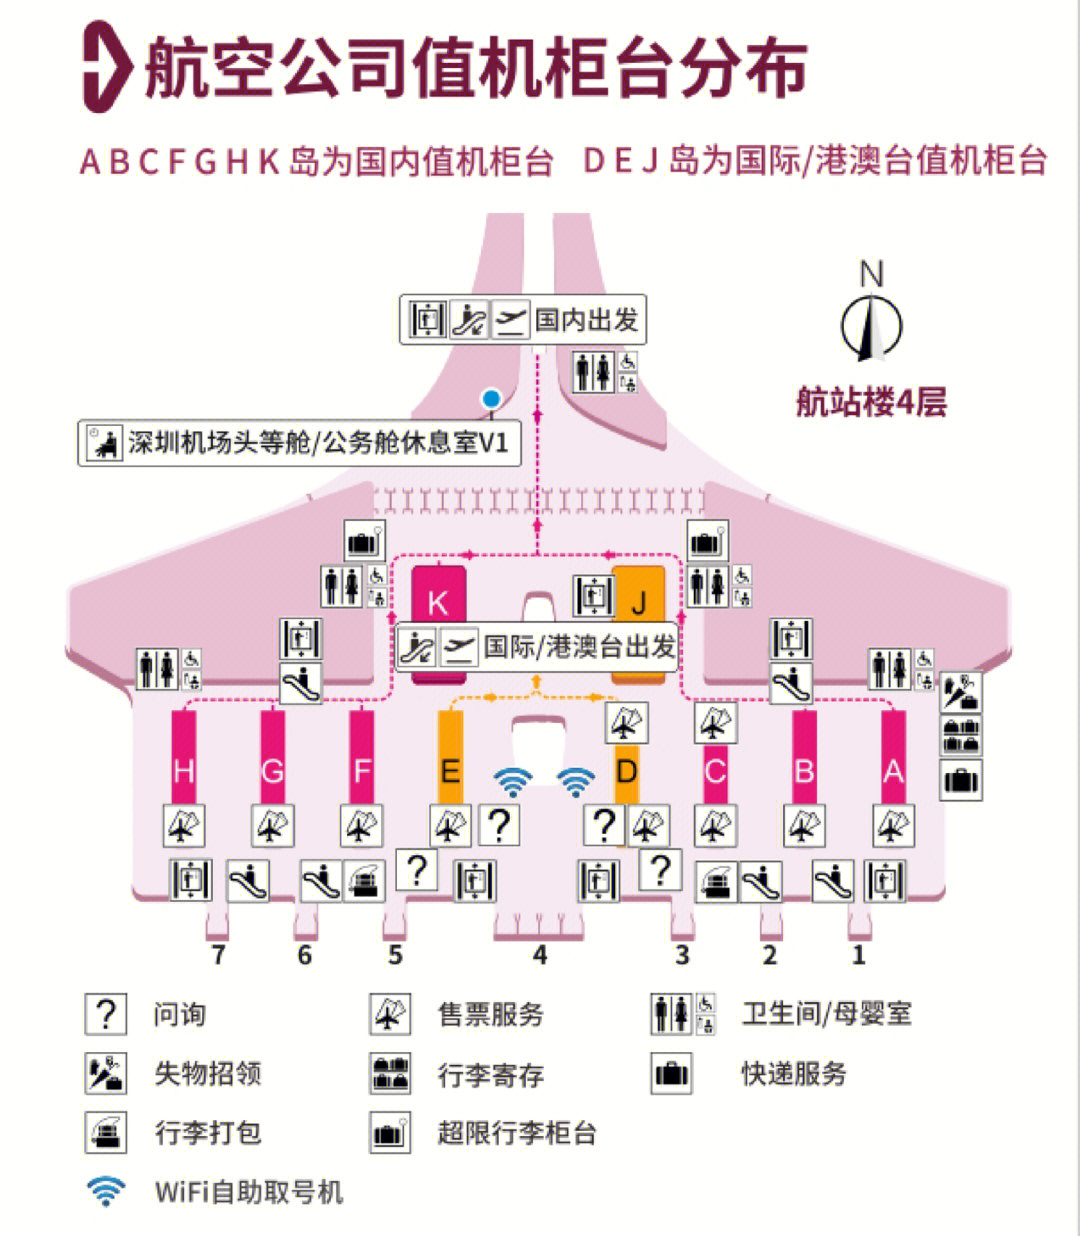 深圳机场内部地图图片